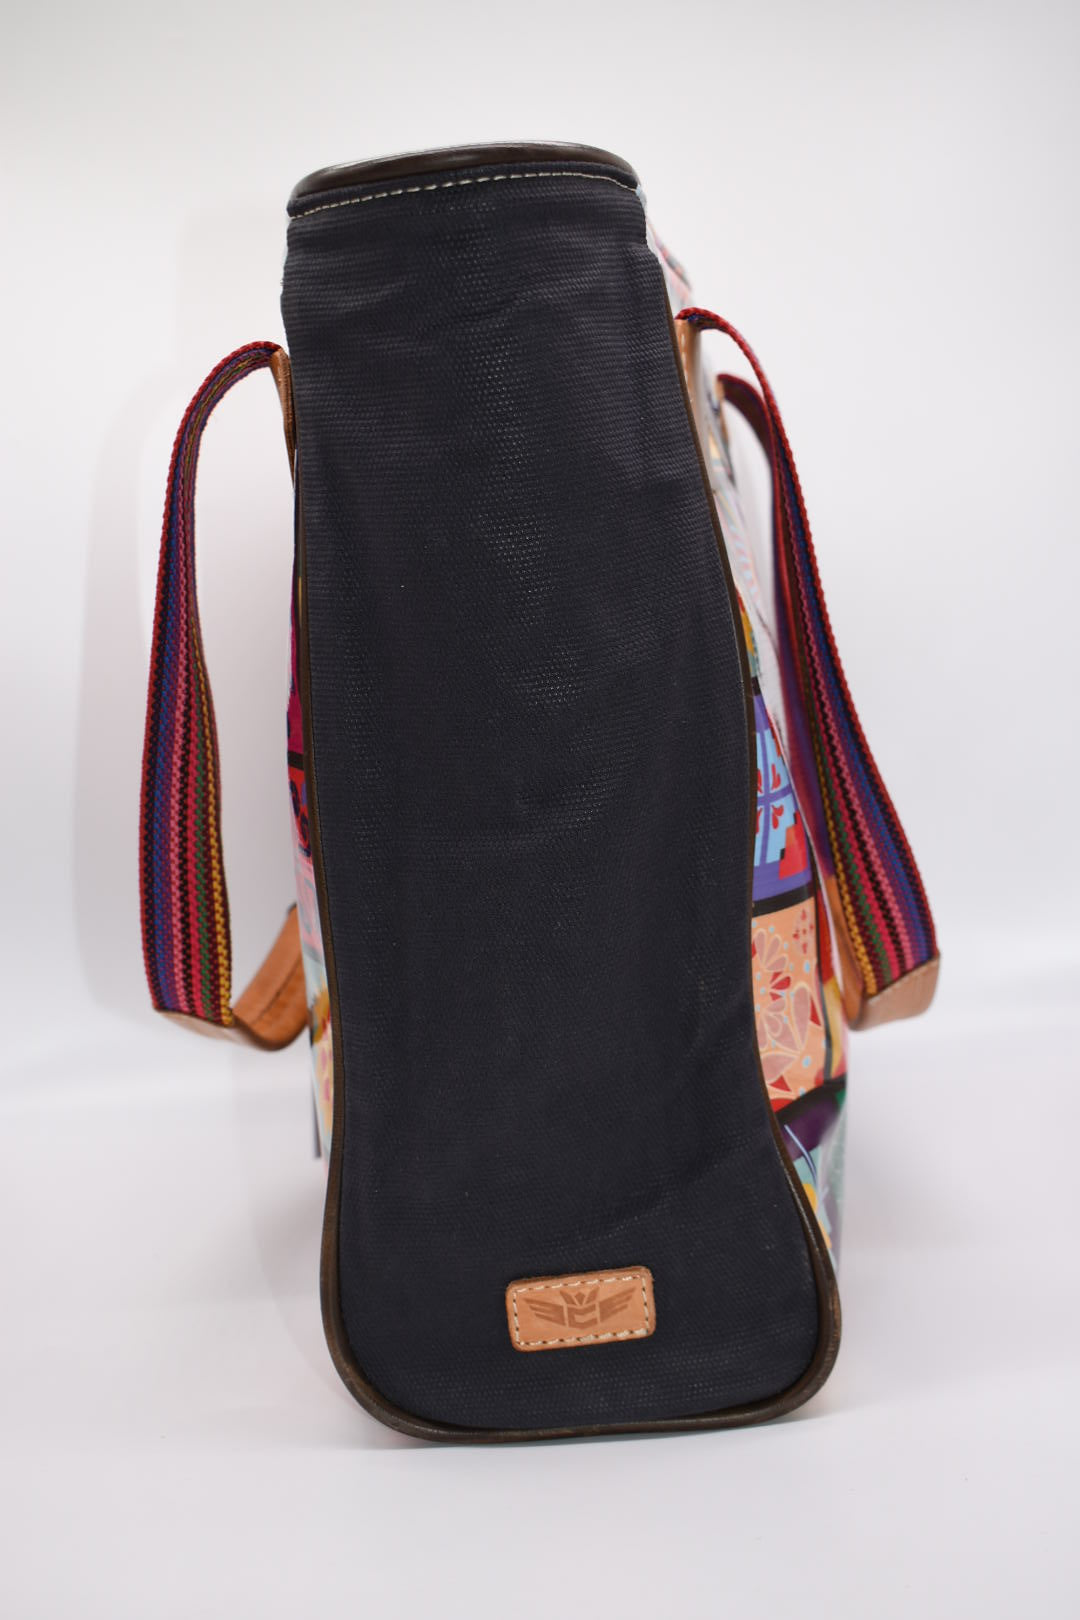 Consuela Allie Classic Tote Bag in Black